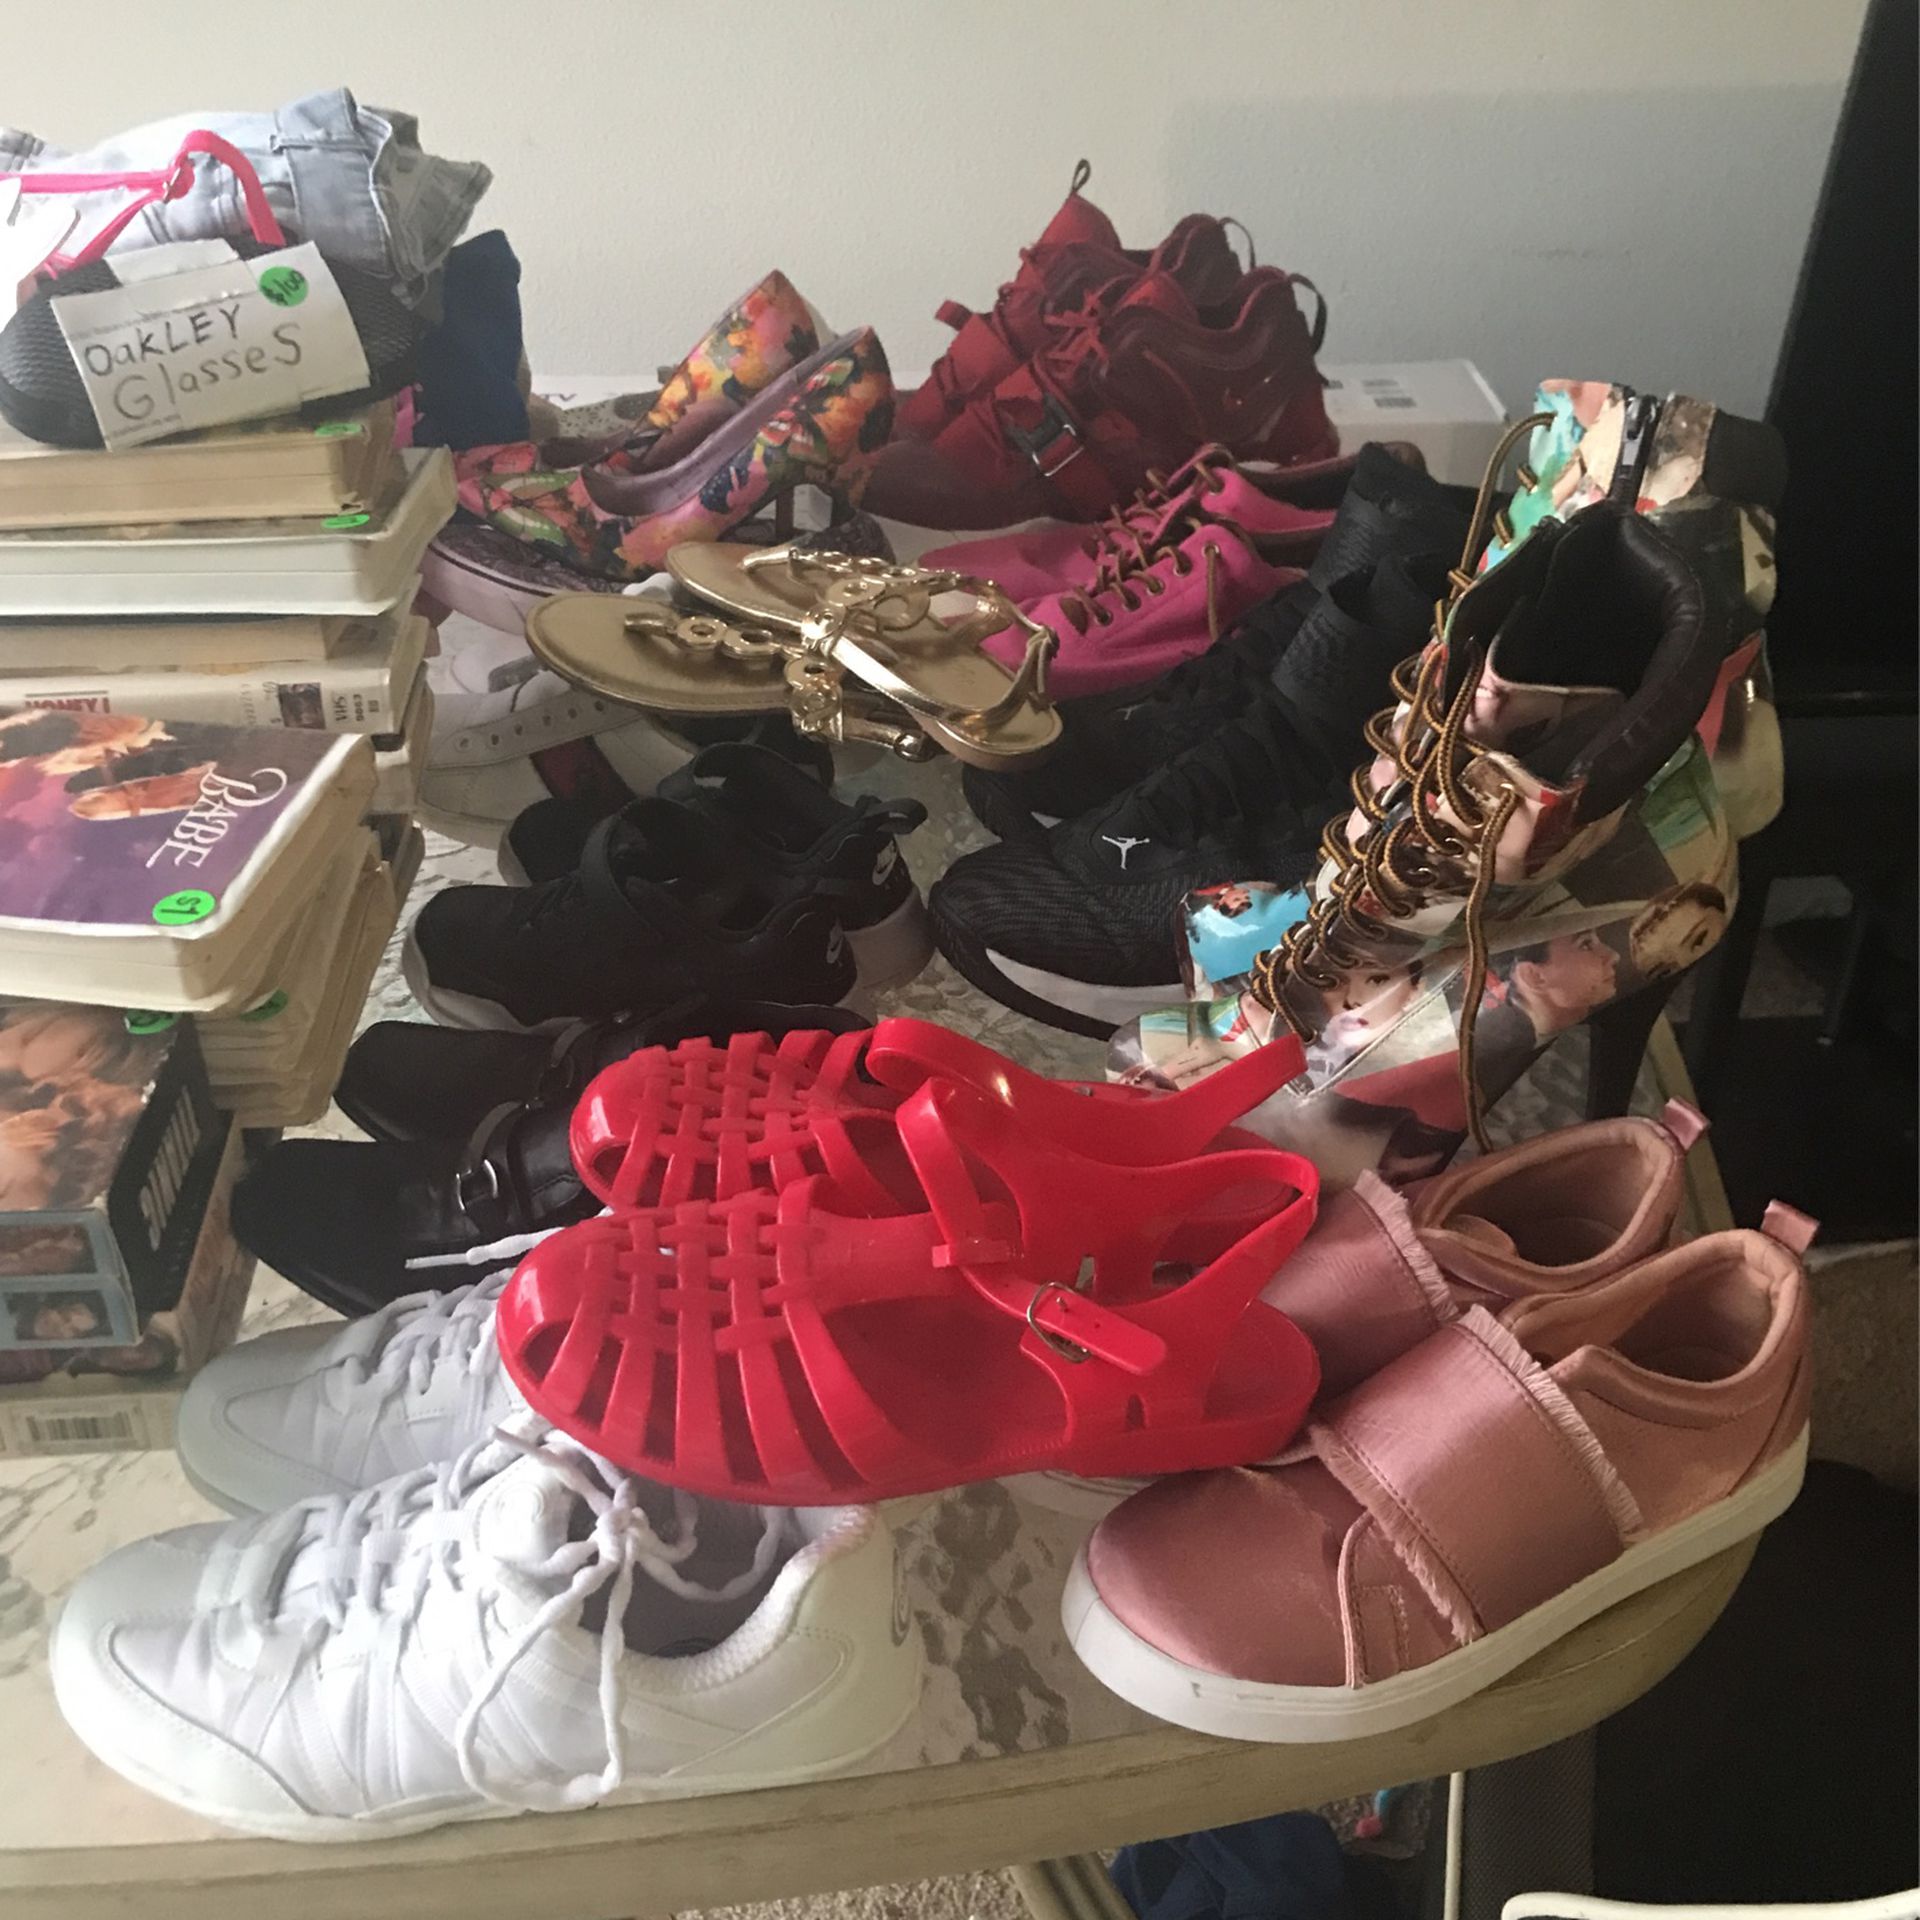 12 Pair Of Shoes Including Size 13 Jordans